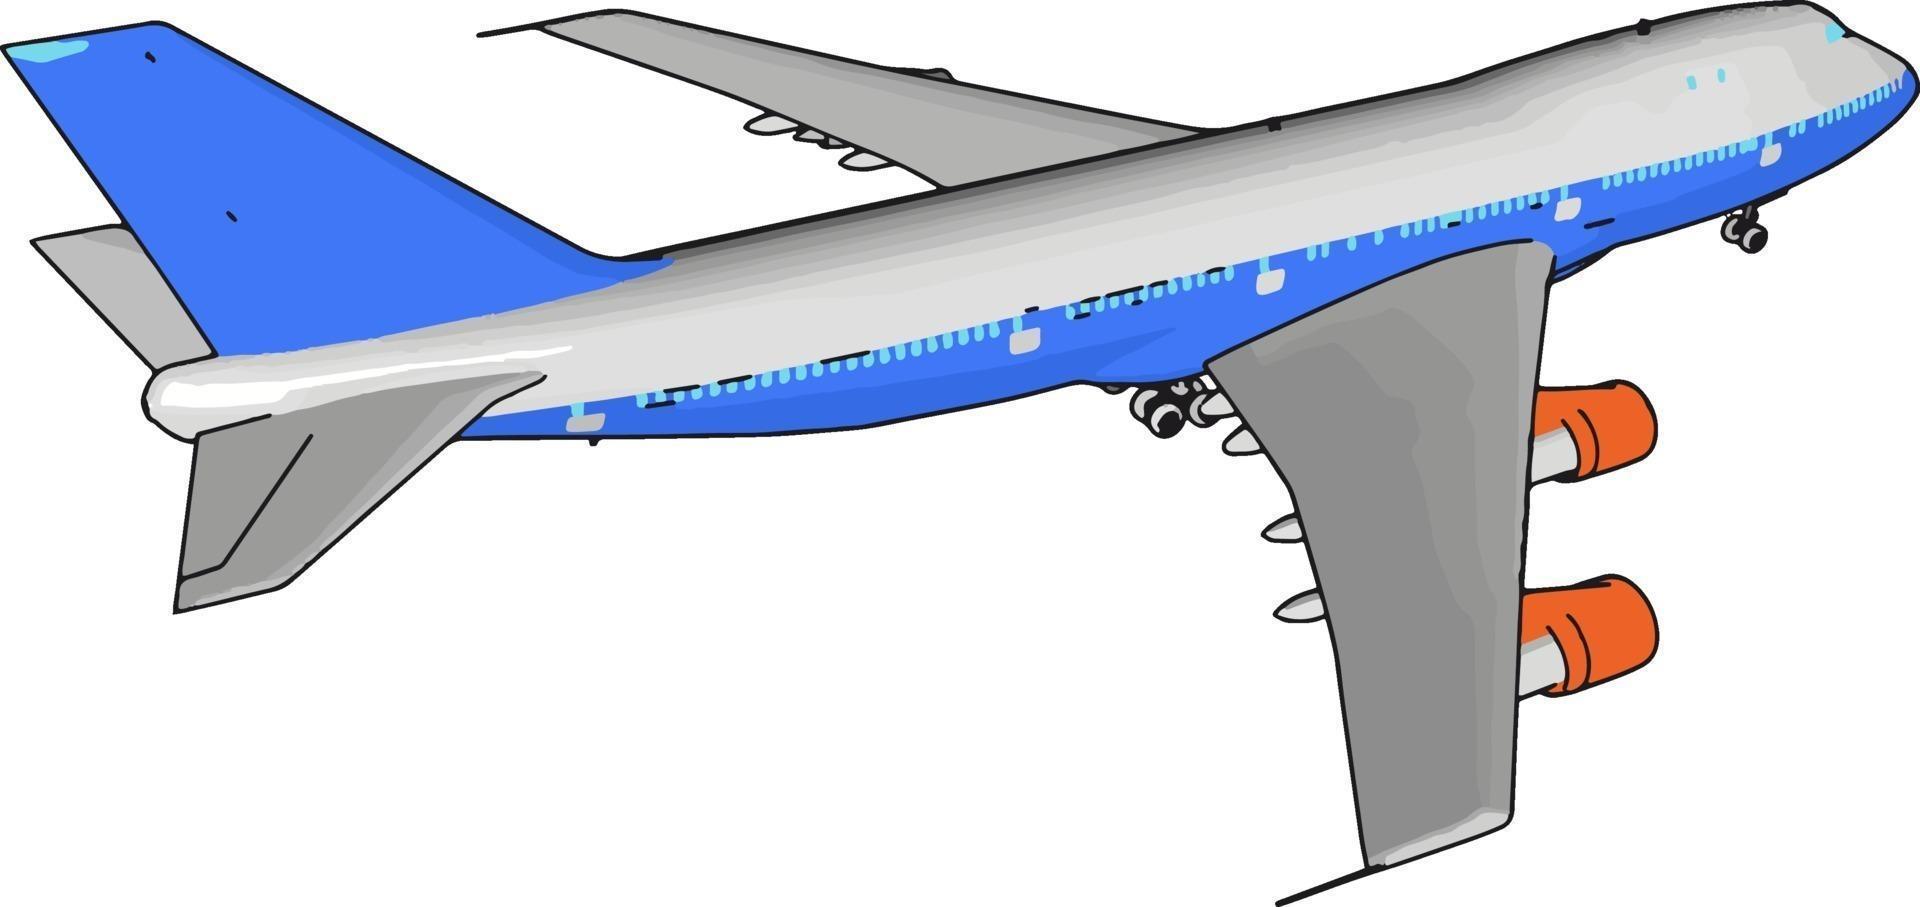 avión de pasajeros azul, ilustración, vector sobre fondo blanco.